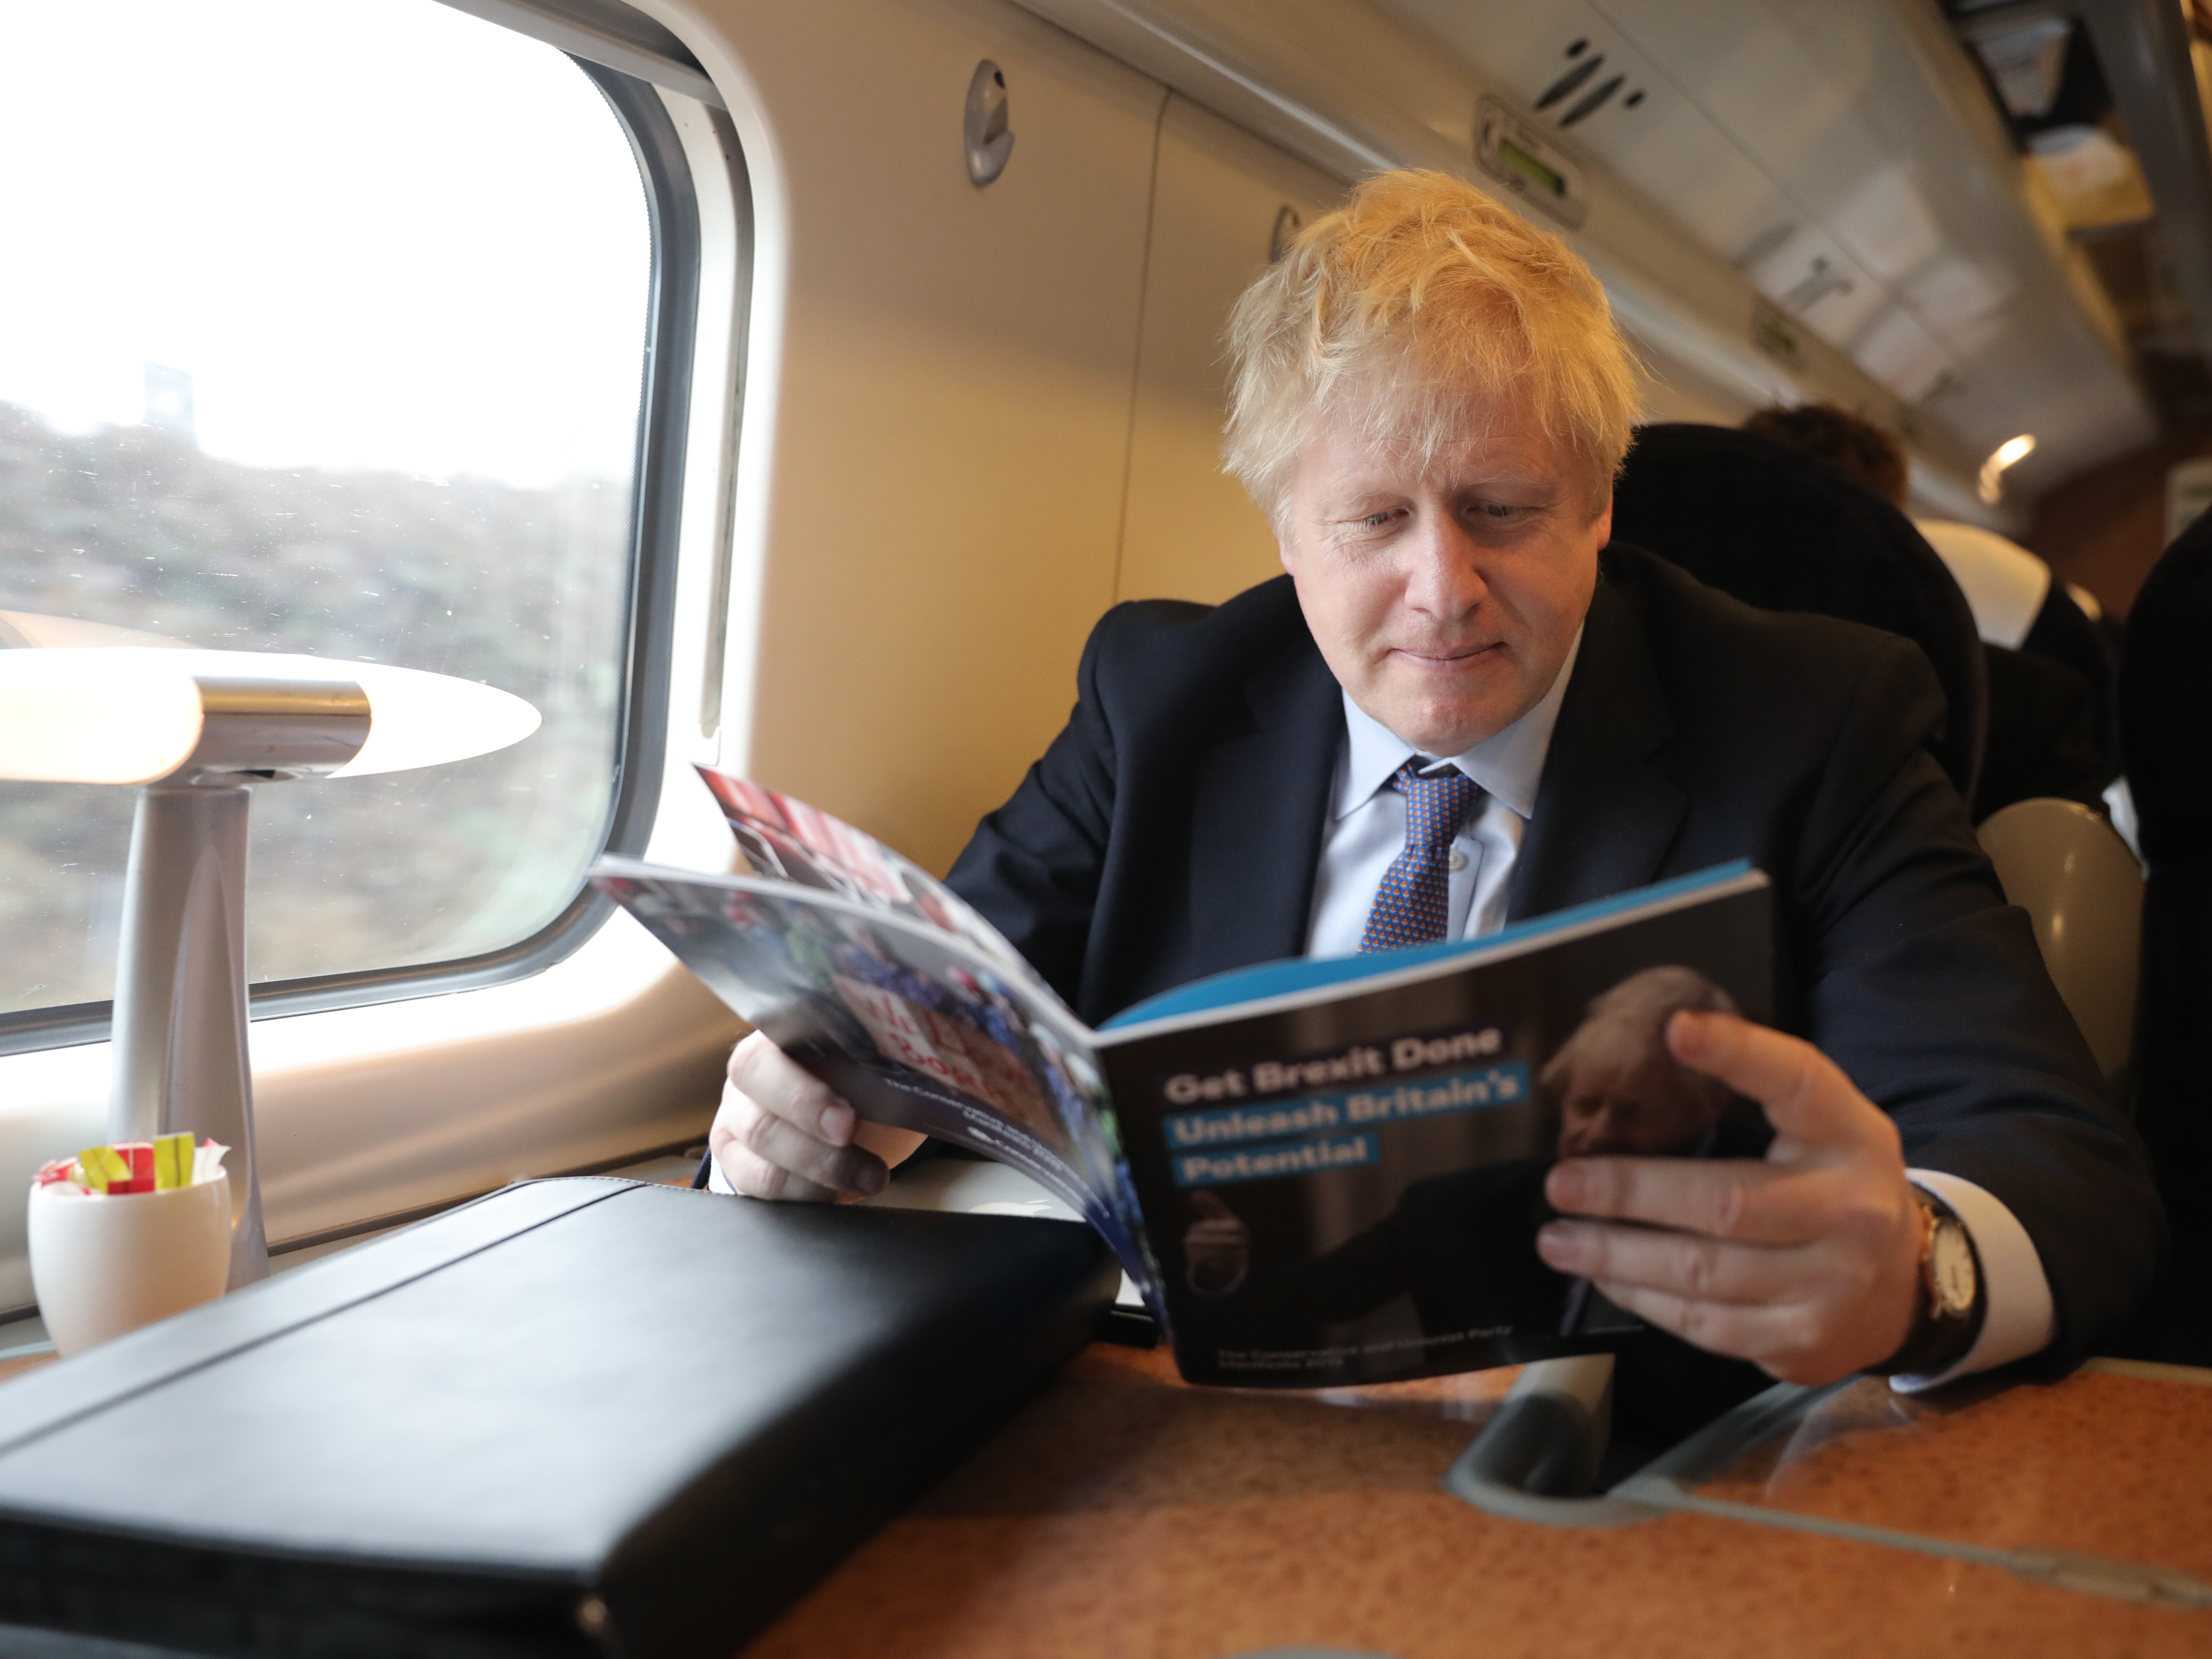 Boris Johnson enjoys his 2019 election manifesto